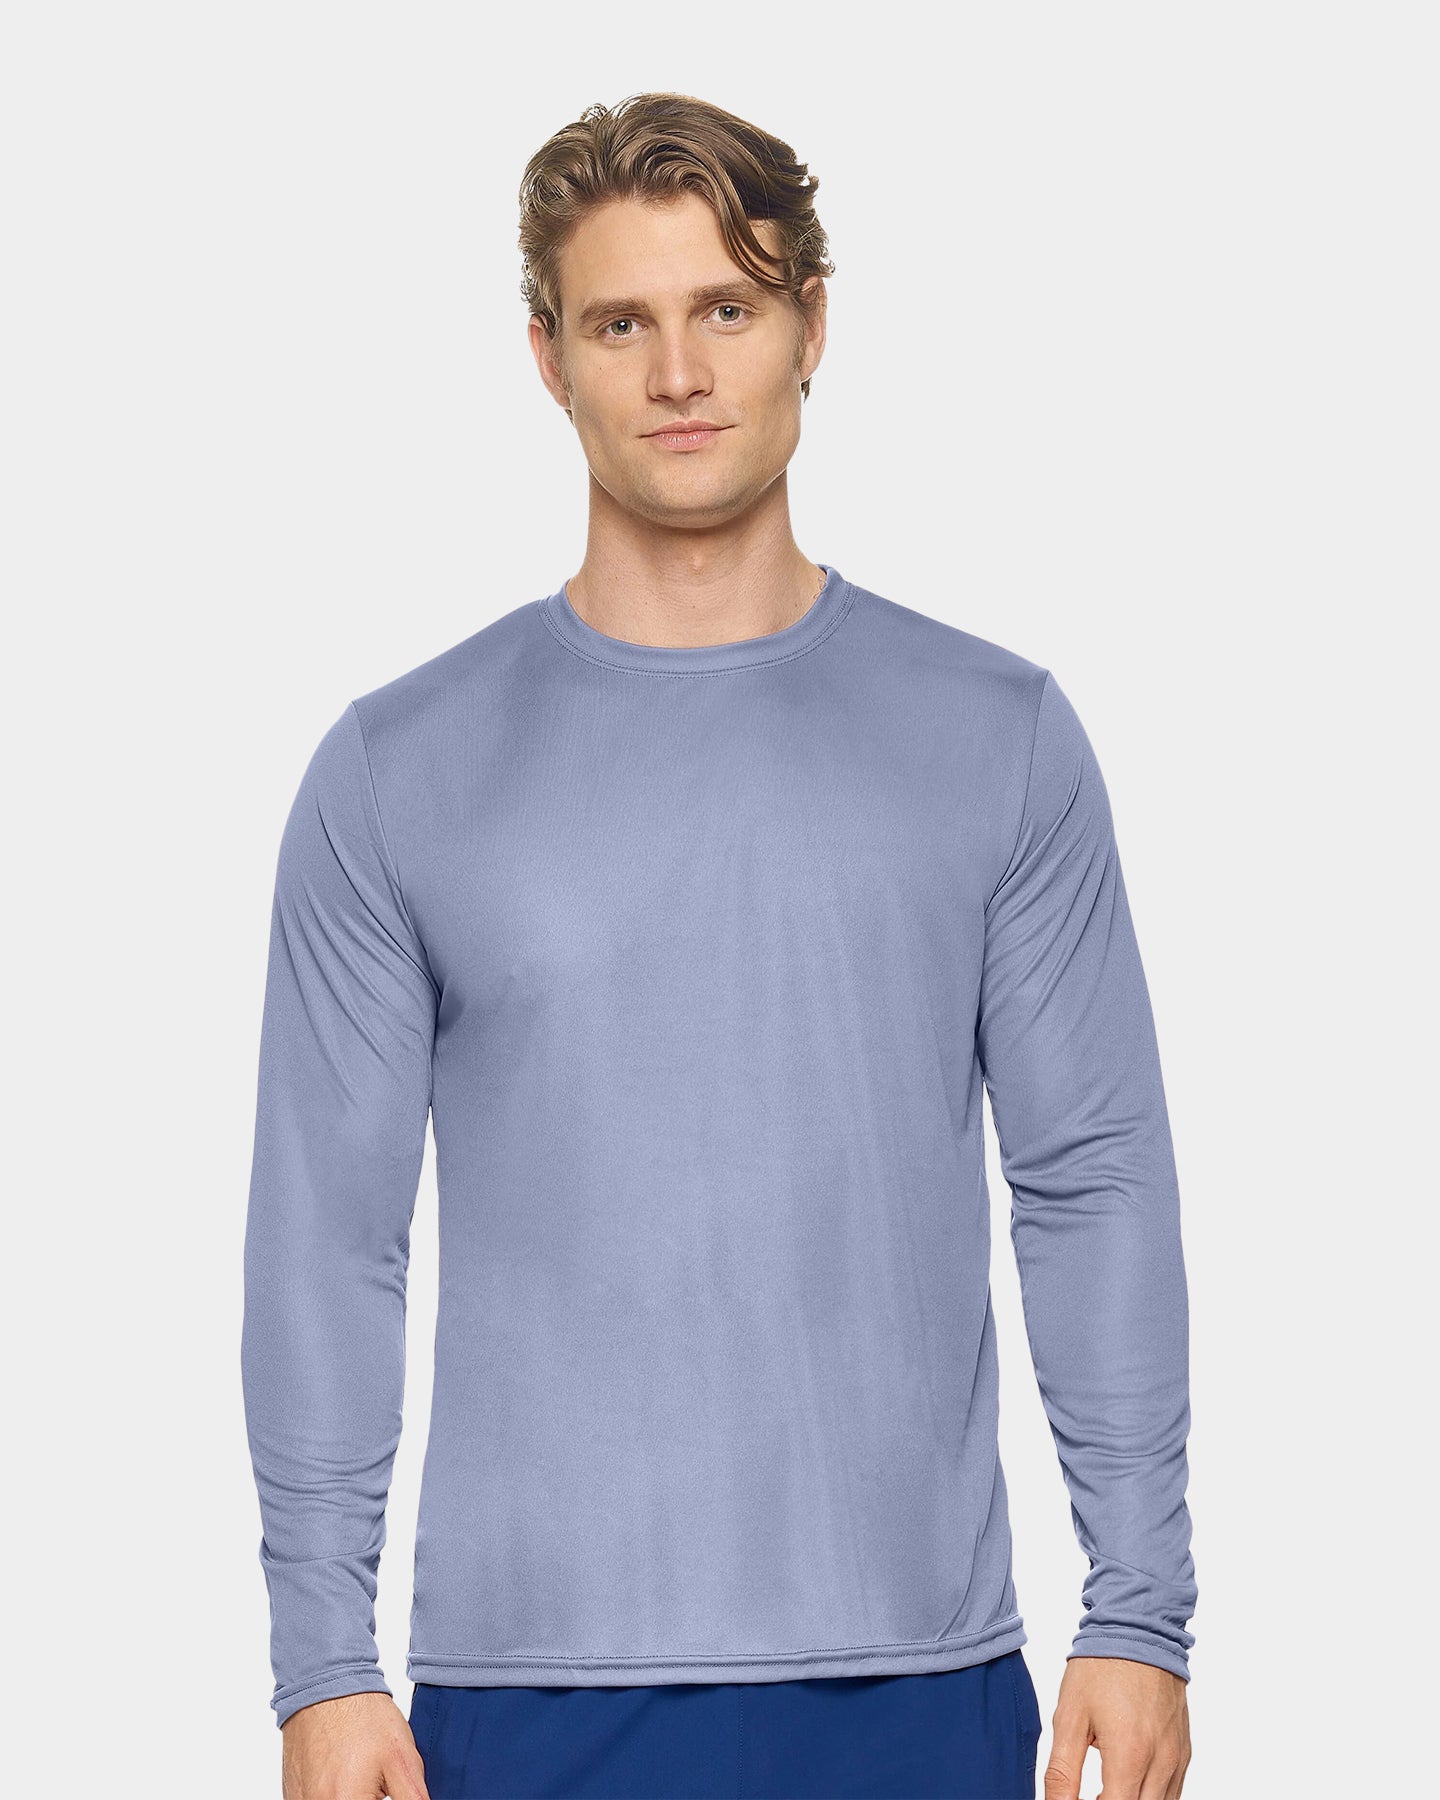 Expert Brand DriMax Men's Performance Long Sleeve Shirt, 3XL, Steel A1